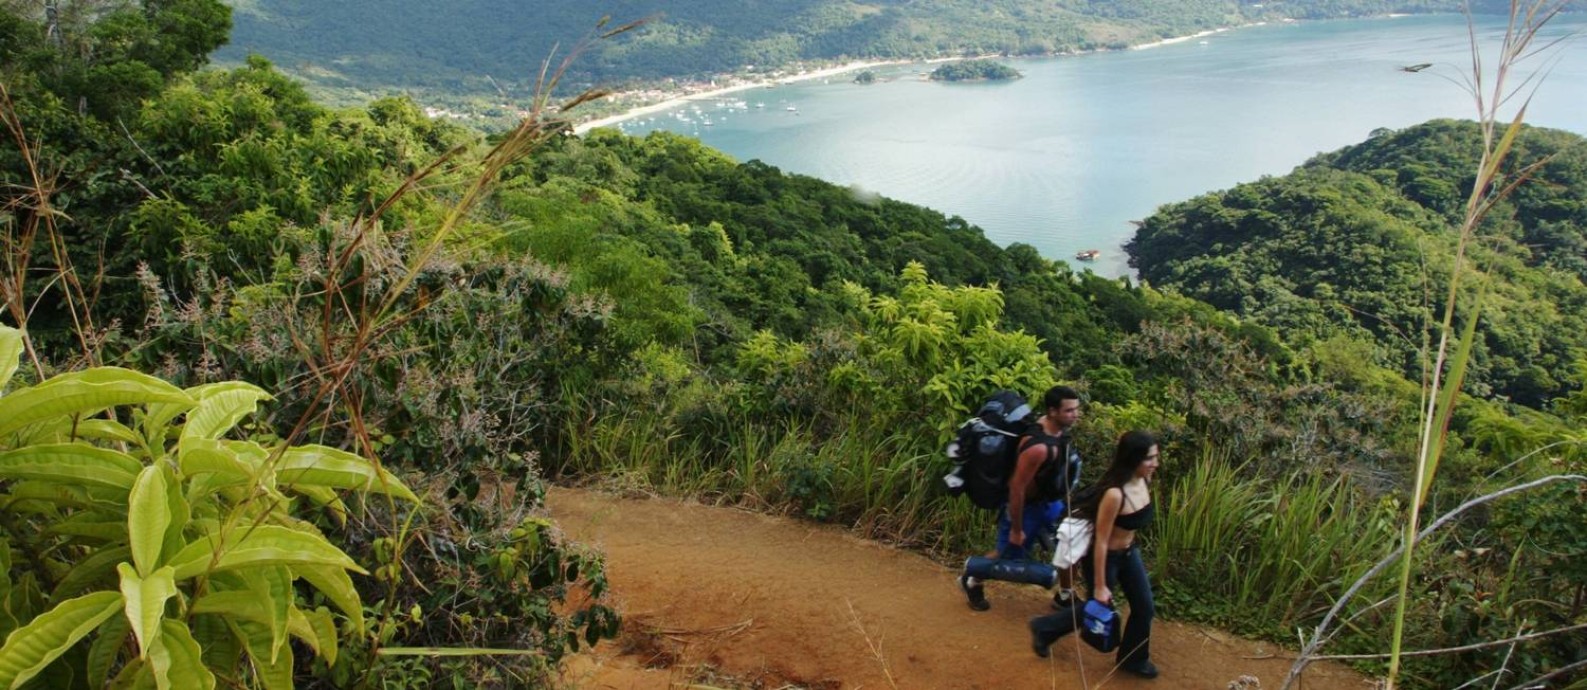 Turistas na trilha Abraão - Lopes Mendes, com a enseada da Vila do Abraão e Pico do Papagaio ao fundo, um dos trechos mais populares do Parque Estadual da Ilha Grande Foto: André Coelho / Arquivo